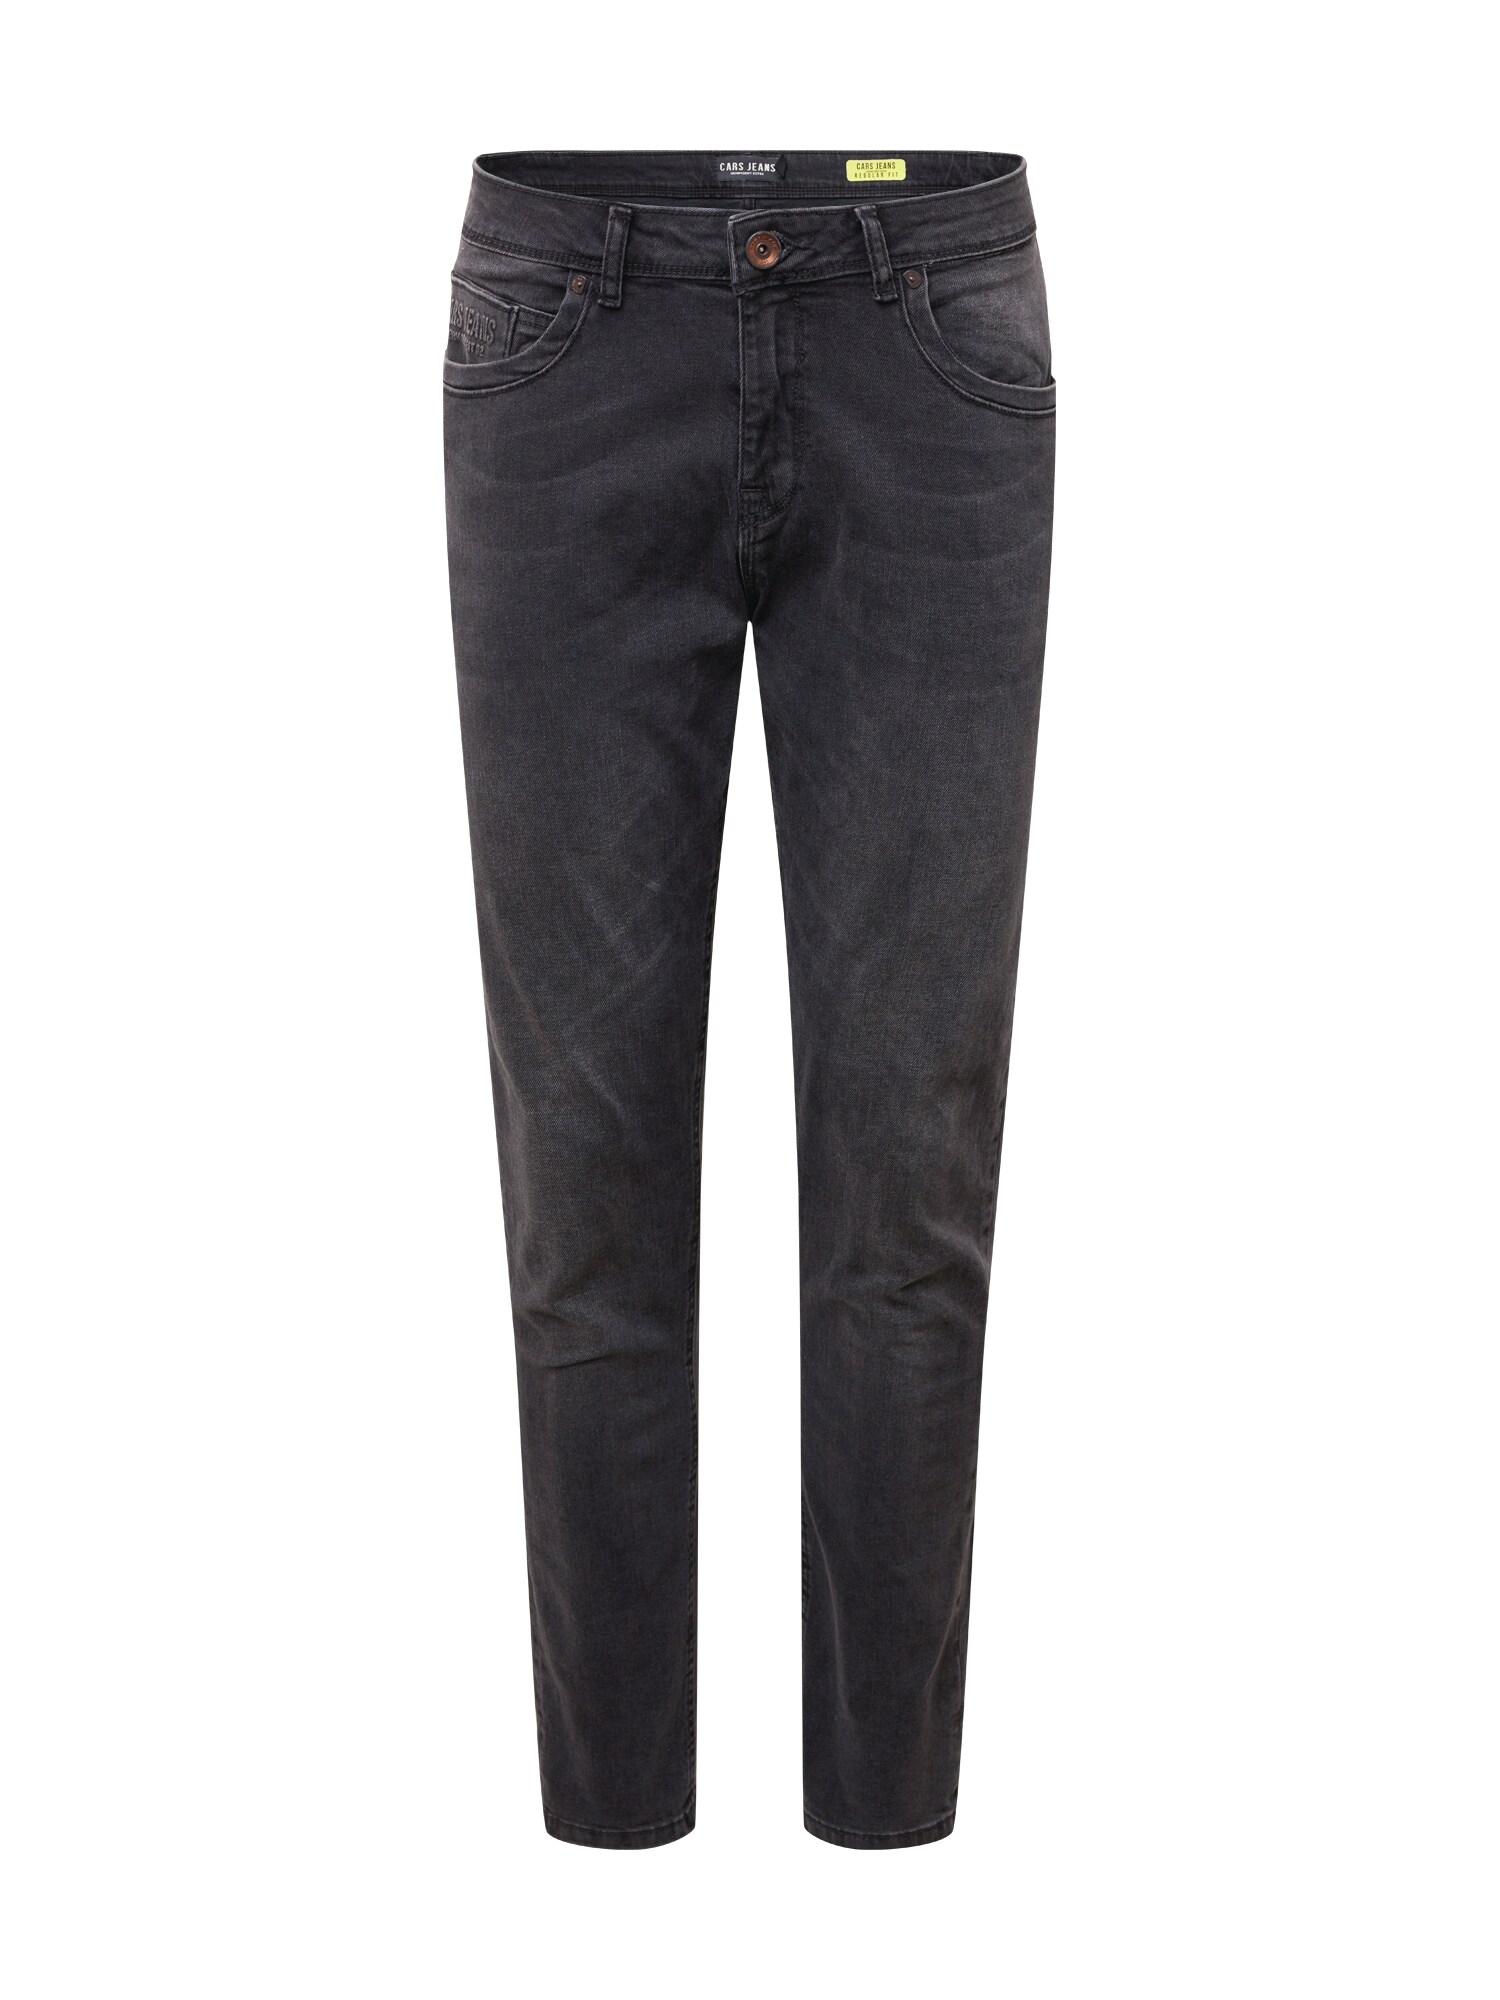 Cars Jeans Džinsai 'Douglas'  juodo džinso spalva